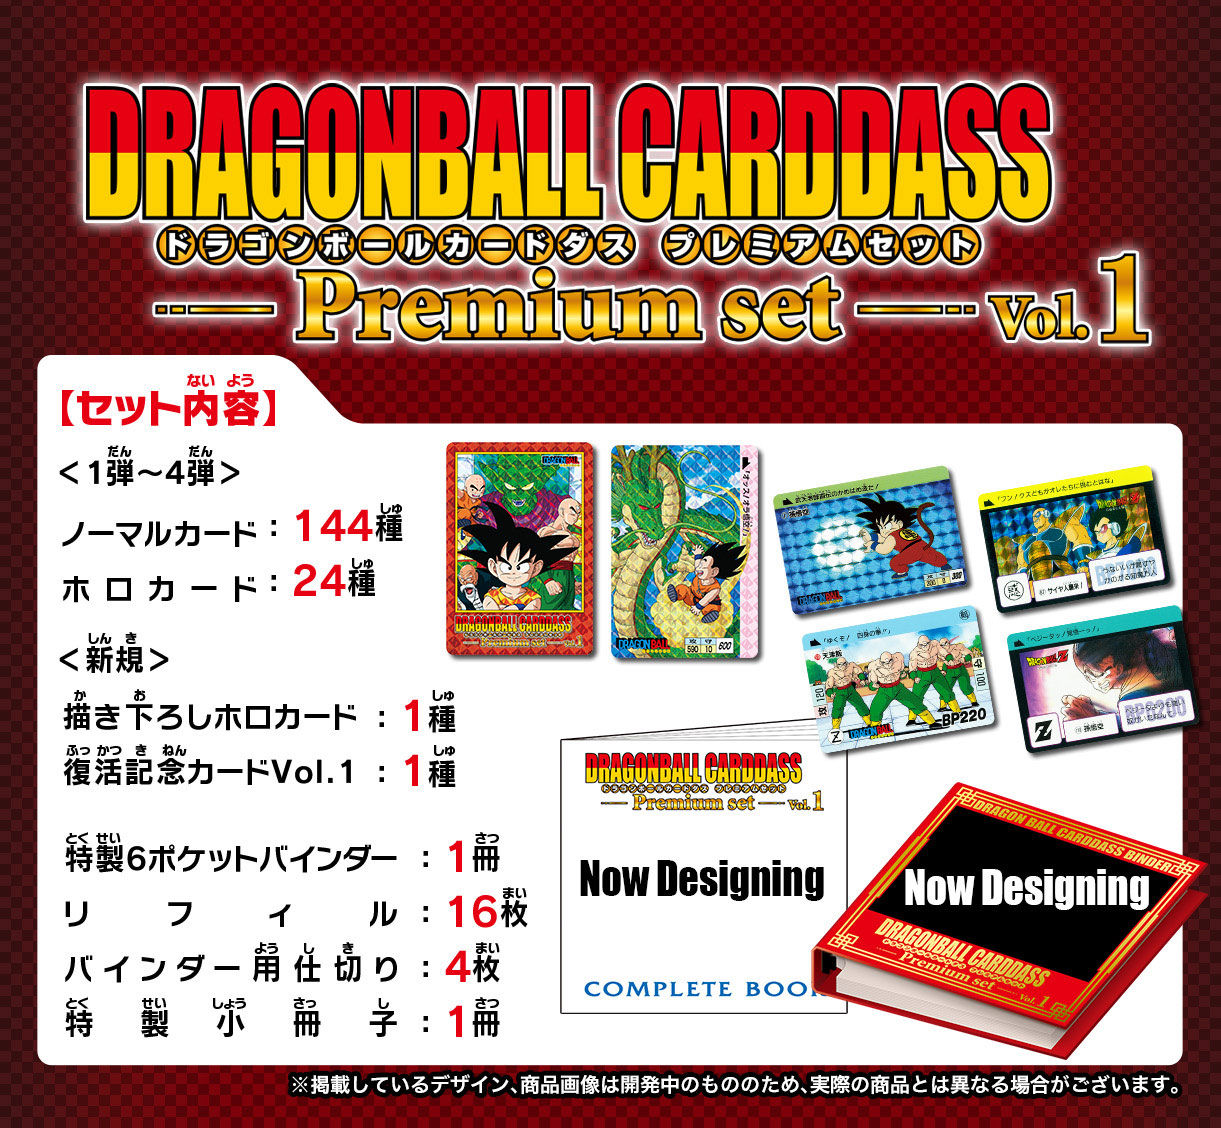 ドラゴンボールカードダス Premium set Vol.1 | ドラゴンボール